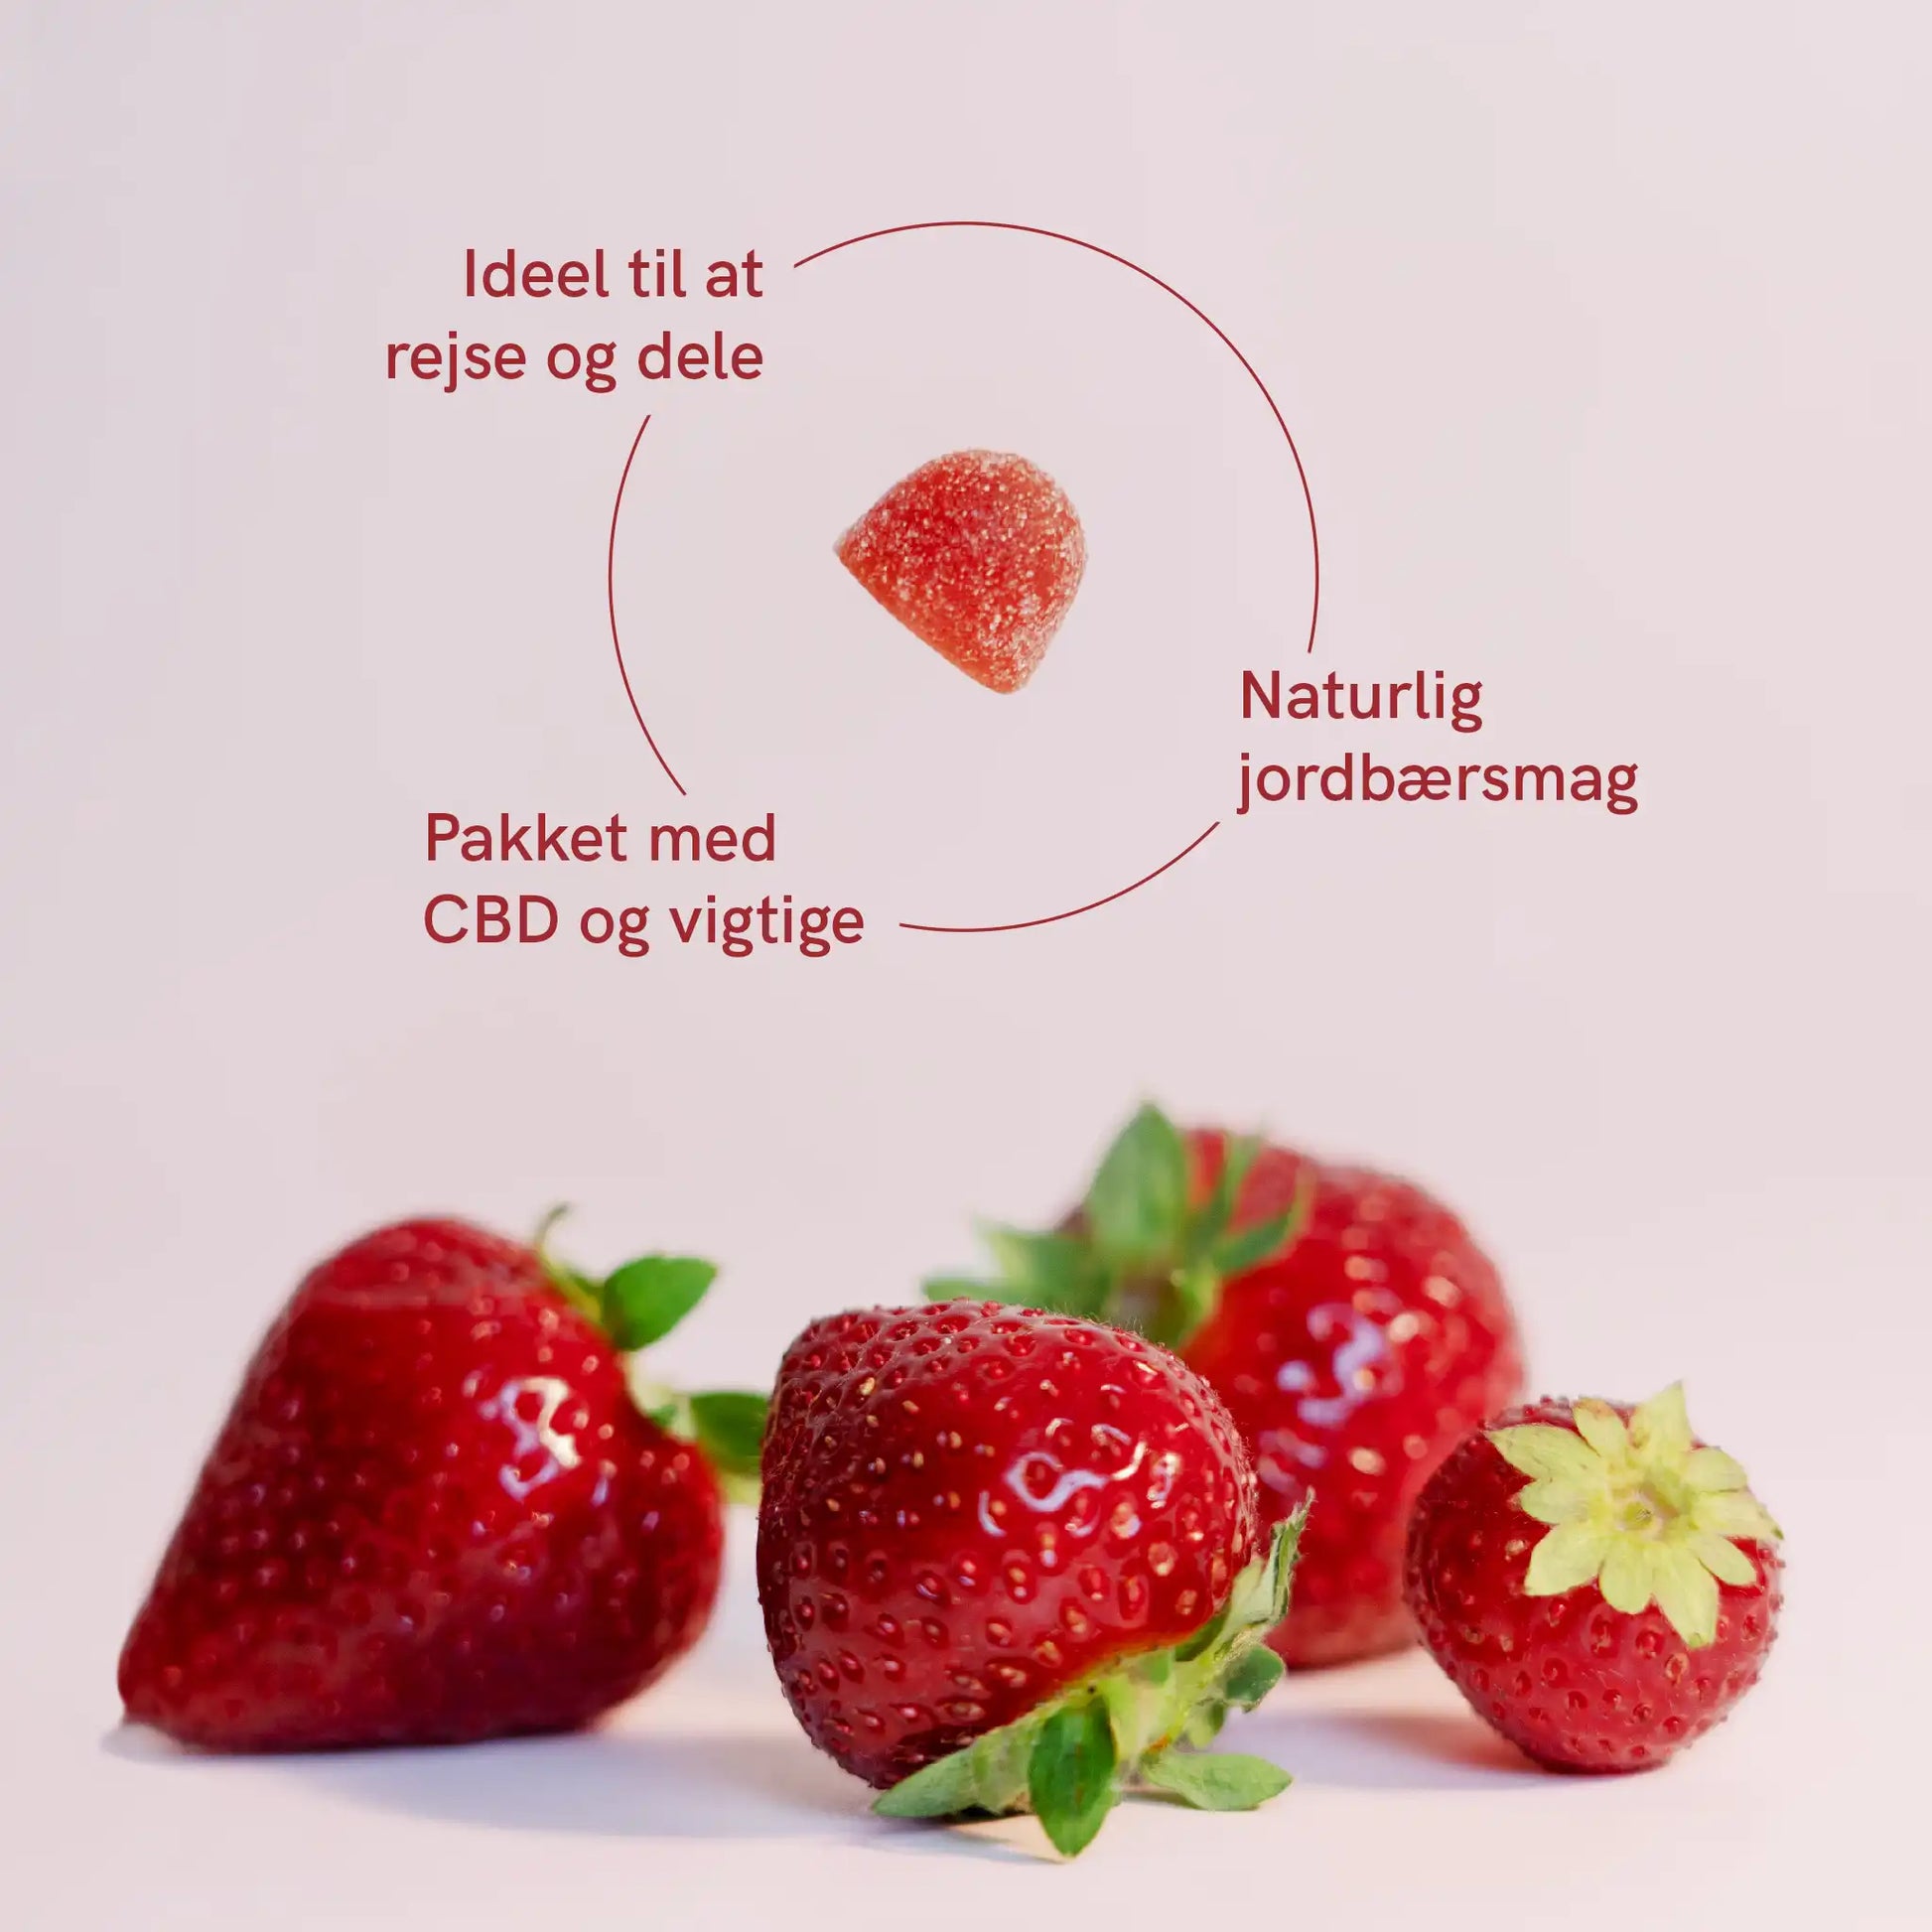 CBD vingummi med naturlig smag af jordbær. Ideel til at rejse og dele.